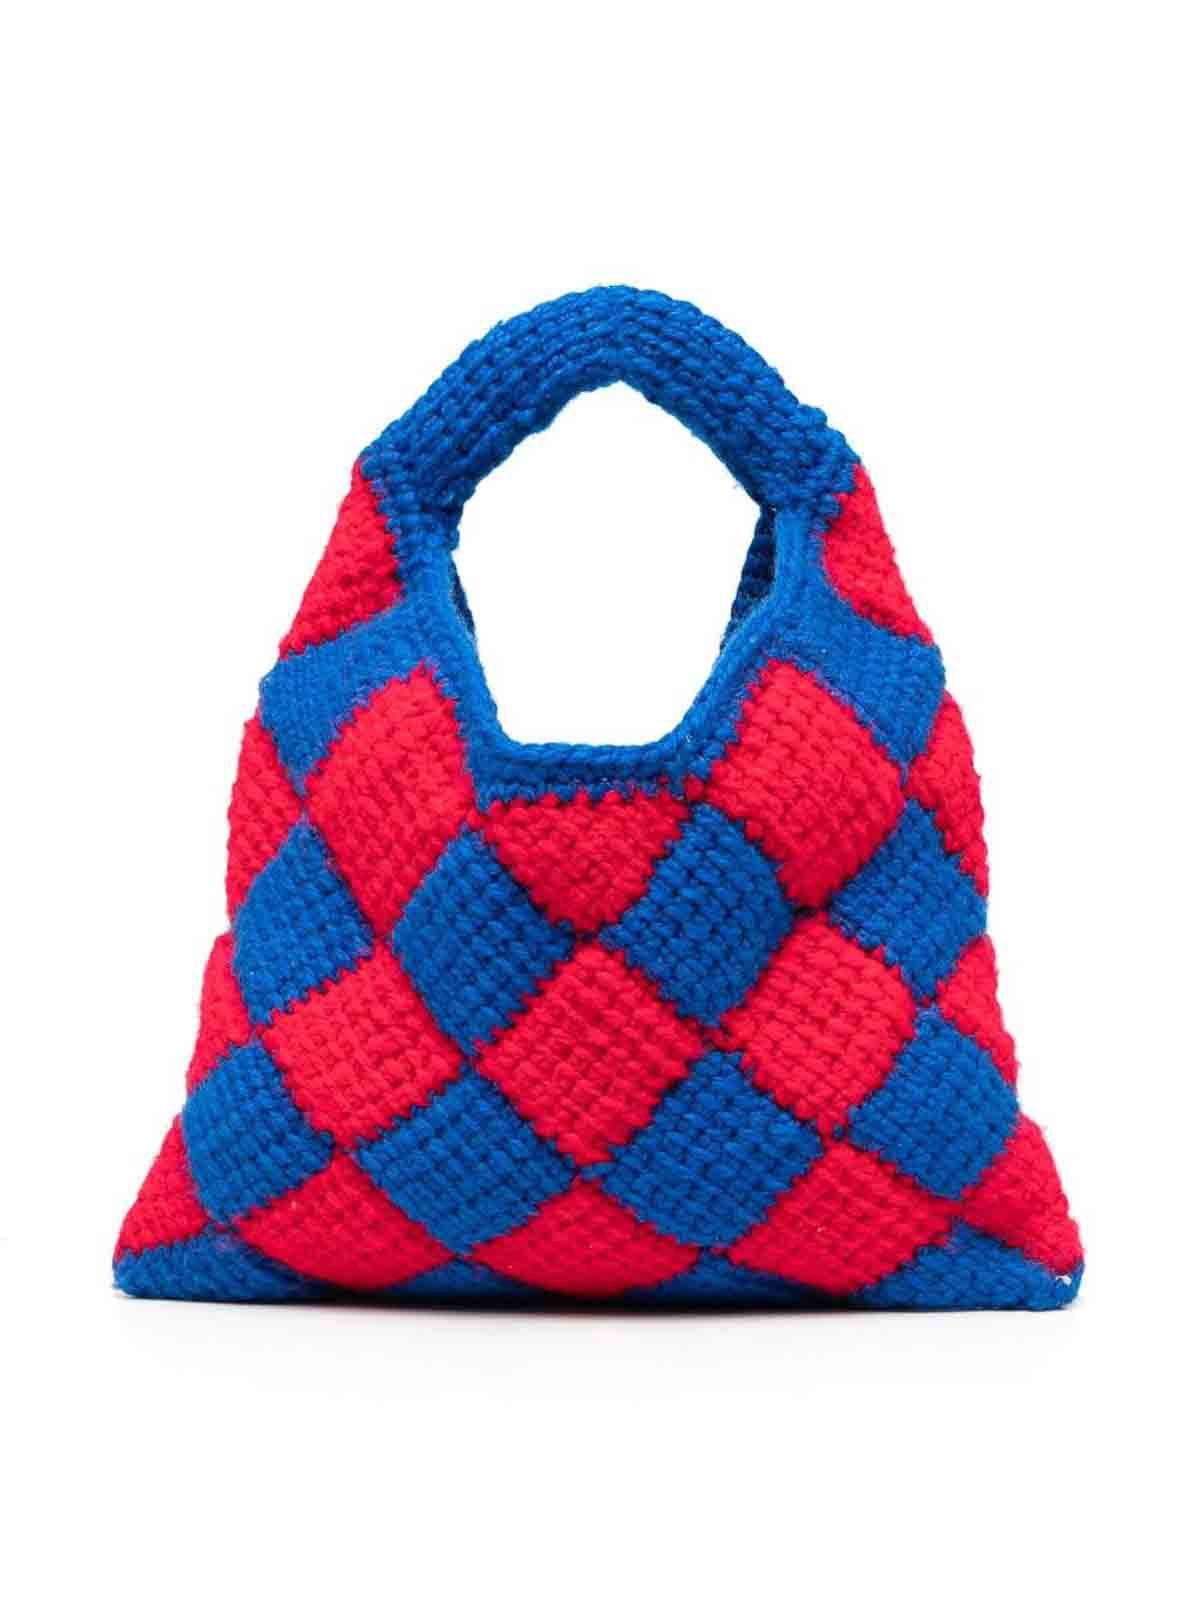 Buy Multi Color Bag/hand Woven Bag/crochet Bag/knitted Bag/colorful Bag/black  Bag/designer Bag/luxury Bag/shoulder Bag/luxury Bag/women's Bag Online in  India - Etsy